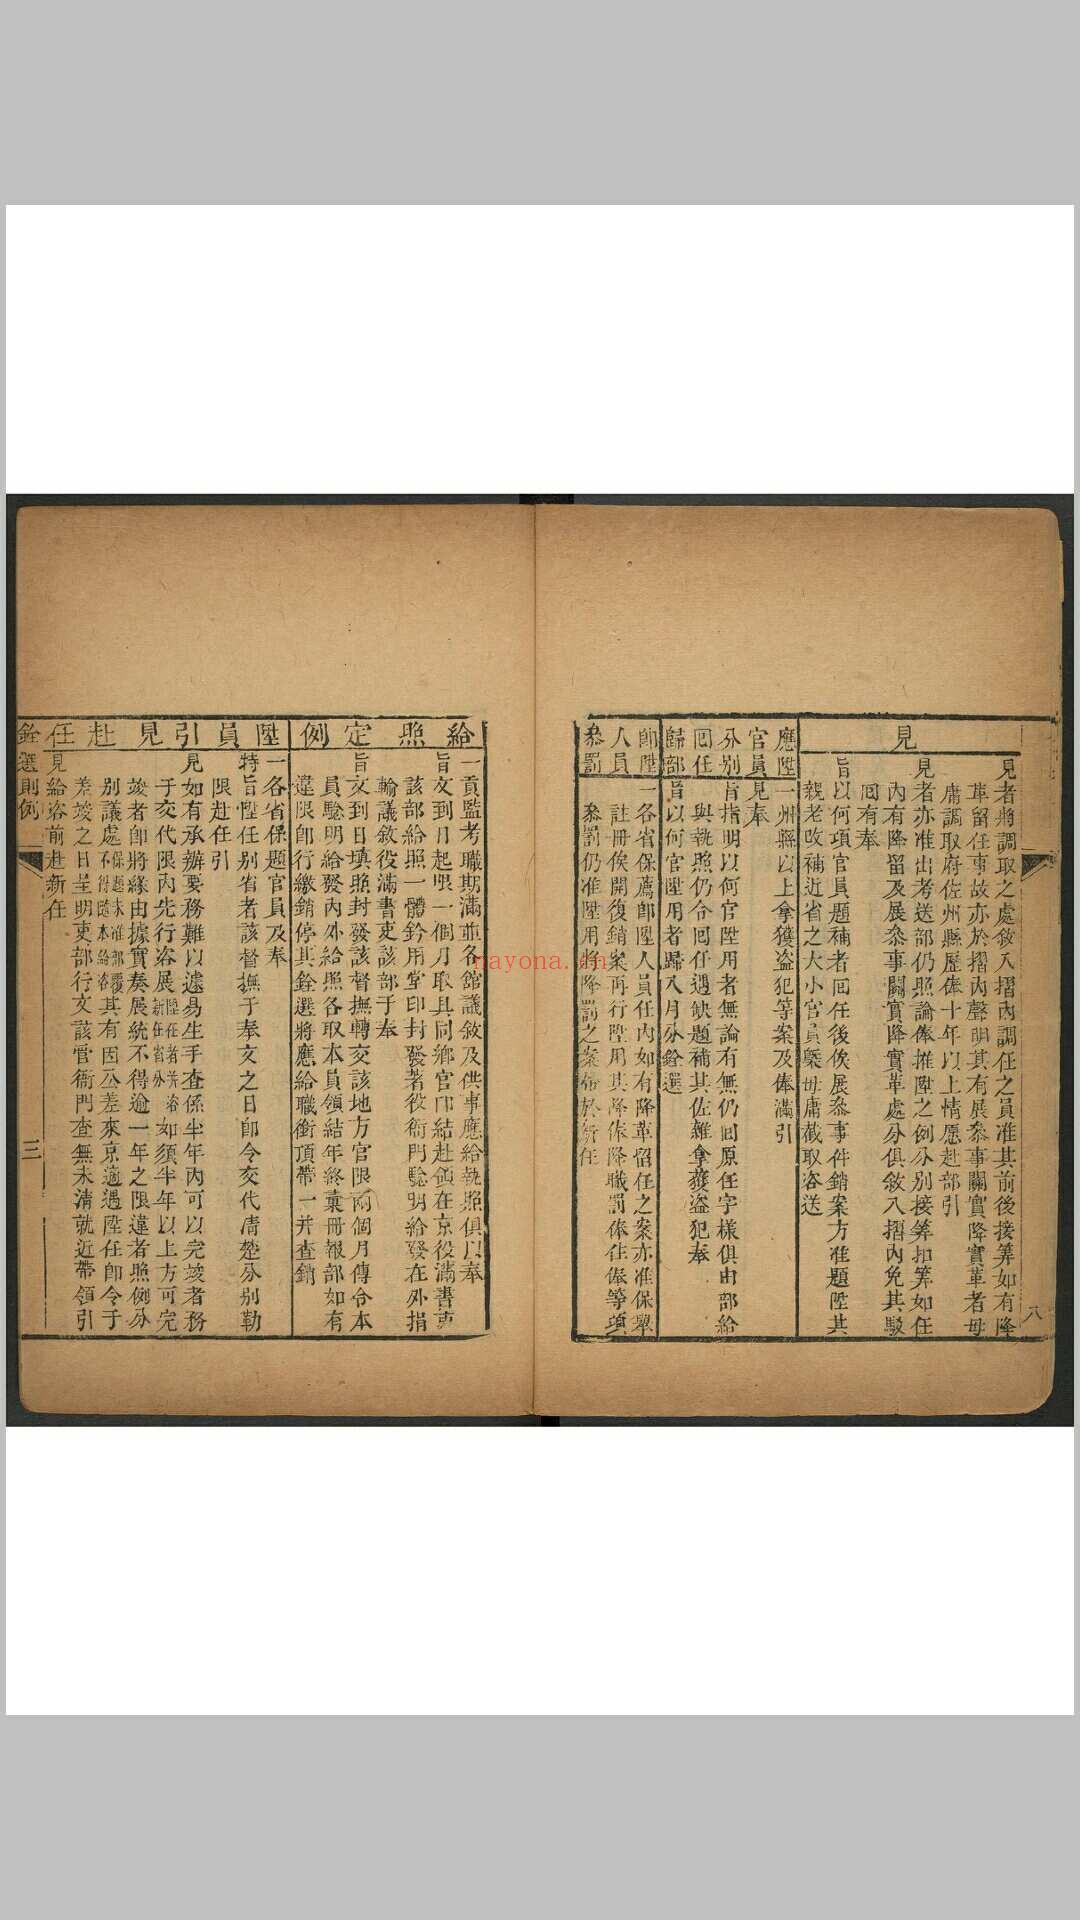 增订则例图要便览 四九卷.钱塘王氏, 清乾隆57年